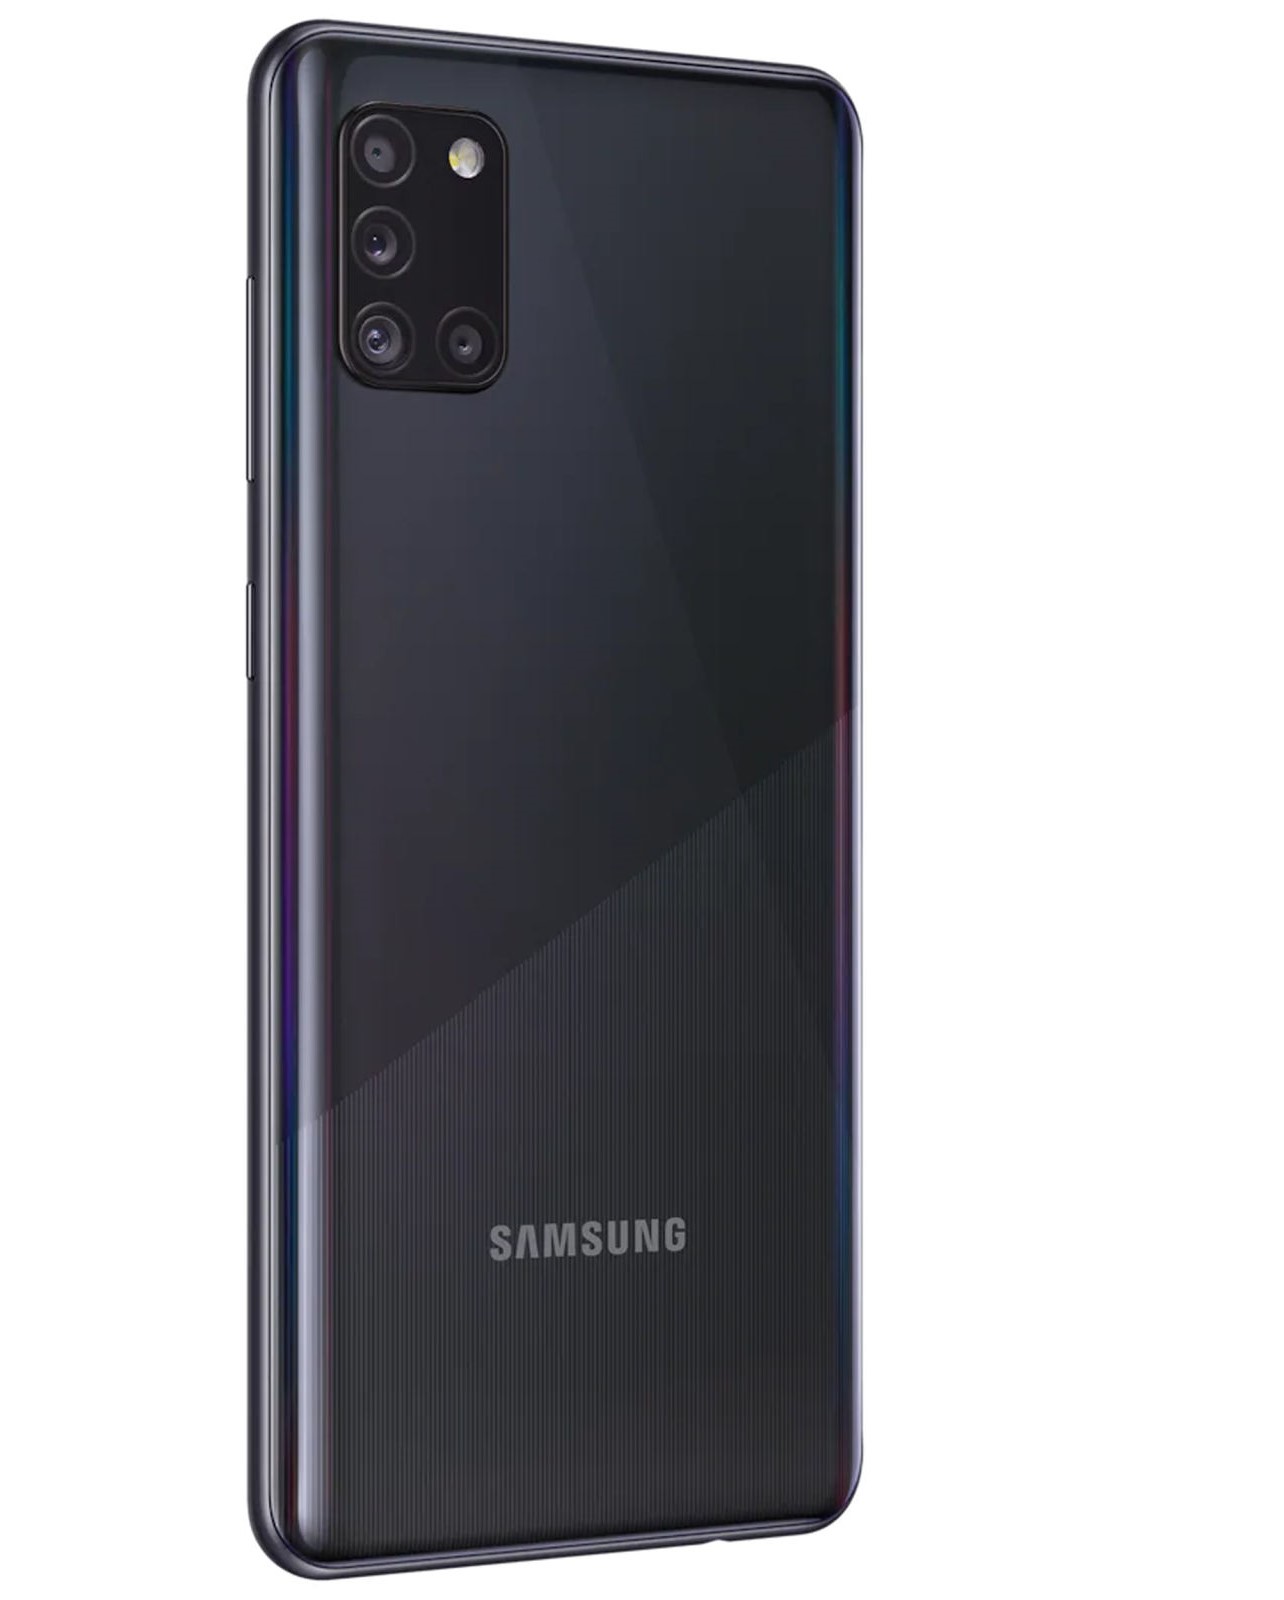 گوشی موبایل سامسونگ مدل Galaxy A31  دو سیم کارت ظرفیت 64 گیگابایت و 4 گیگابایت رم thumb 188